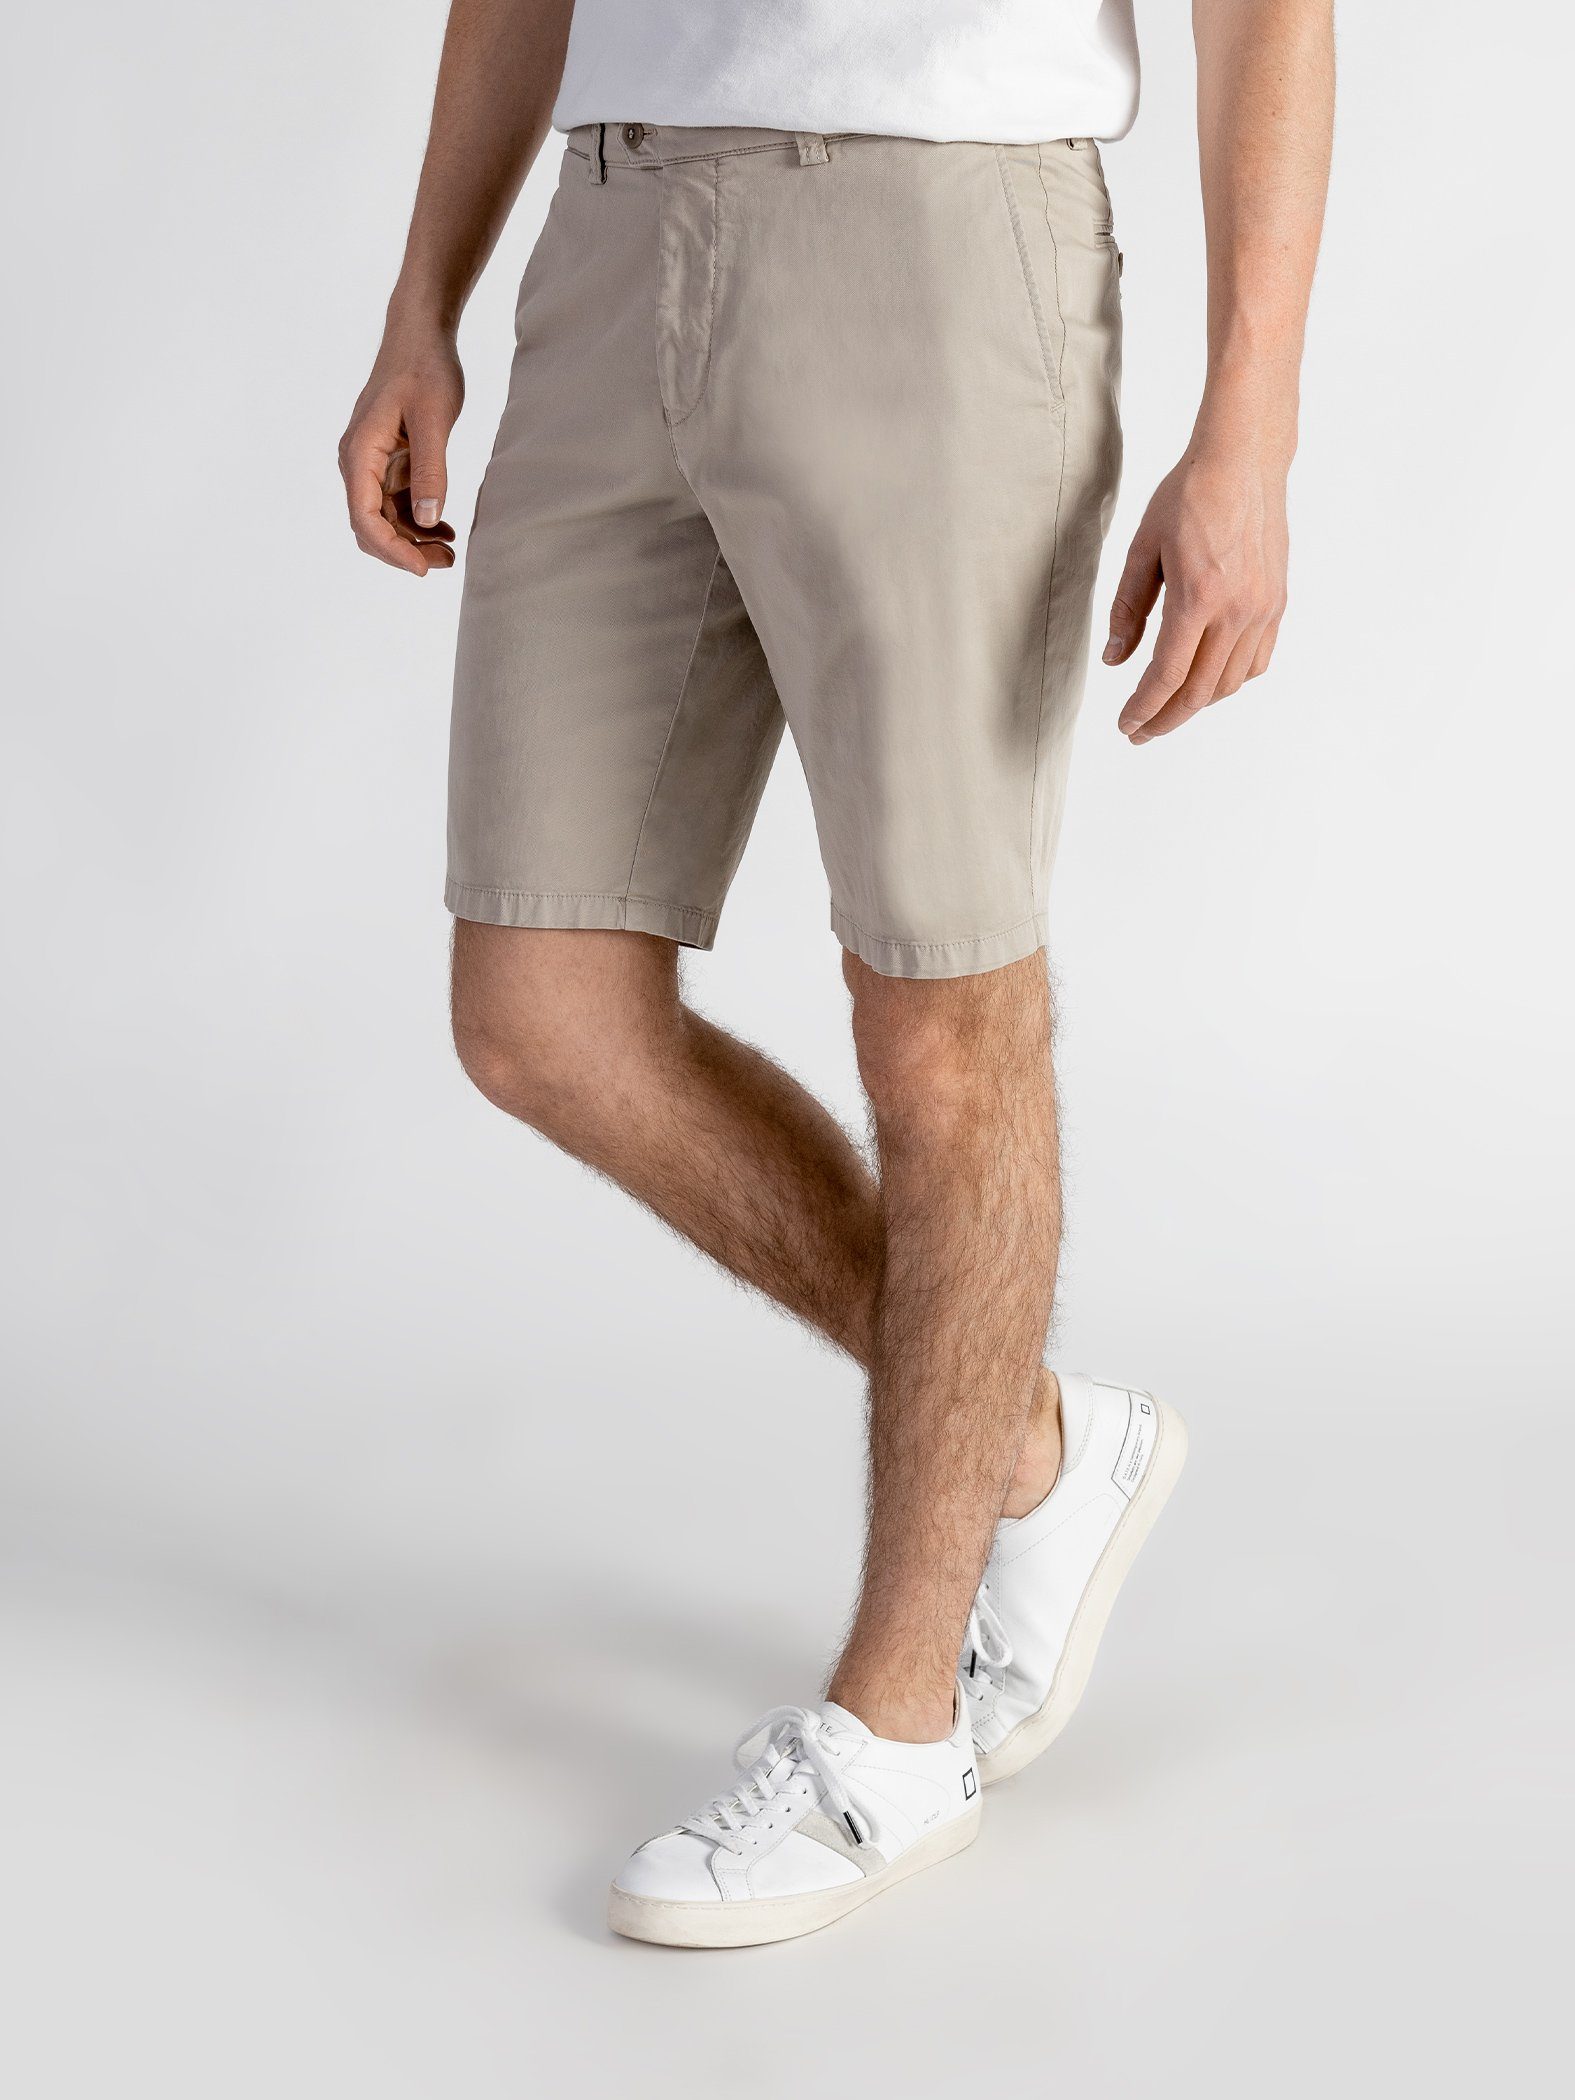 Shorts GOTS-zertifiziert mit Bund, Shorts sandbeige Farbauswahl, elastischem TwoMates